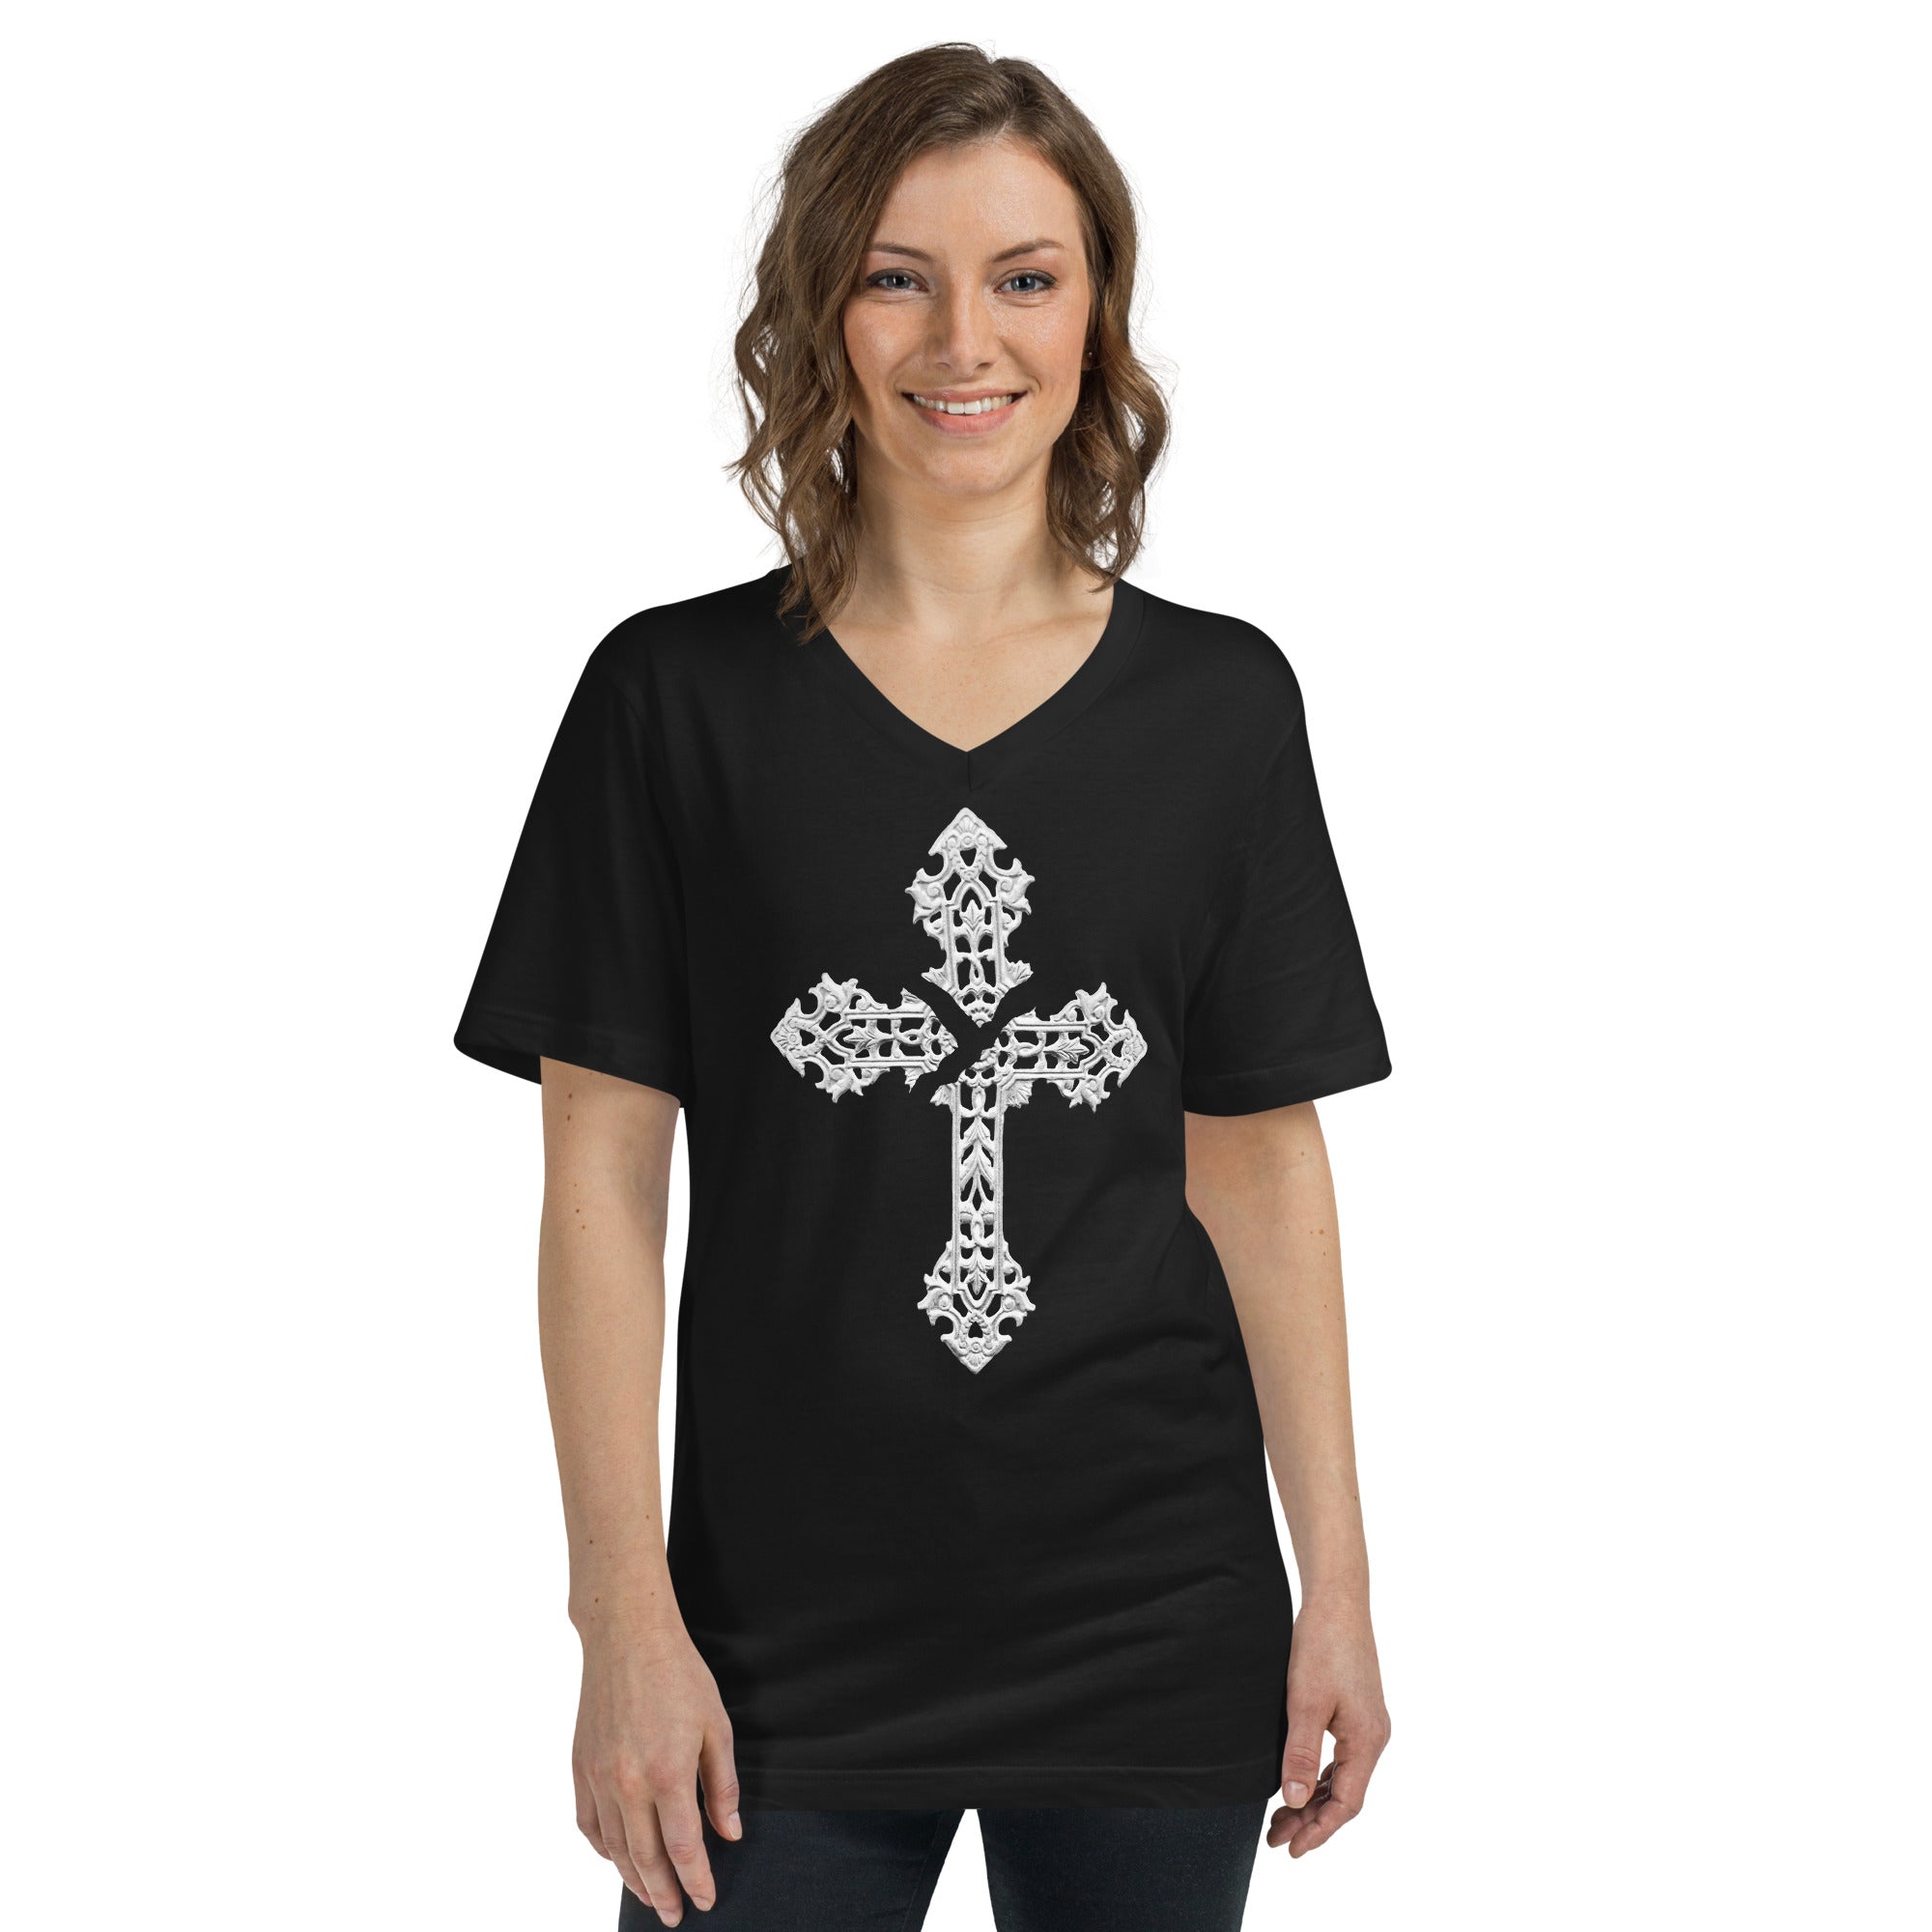 Broken Holy Cross Women’s Short Sleeve V-Neck T-Shirt - Edge of Life Designs